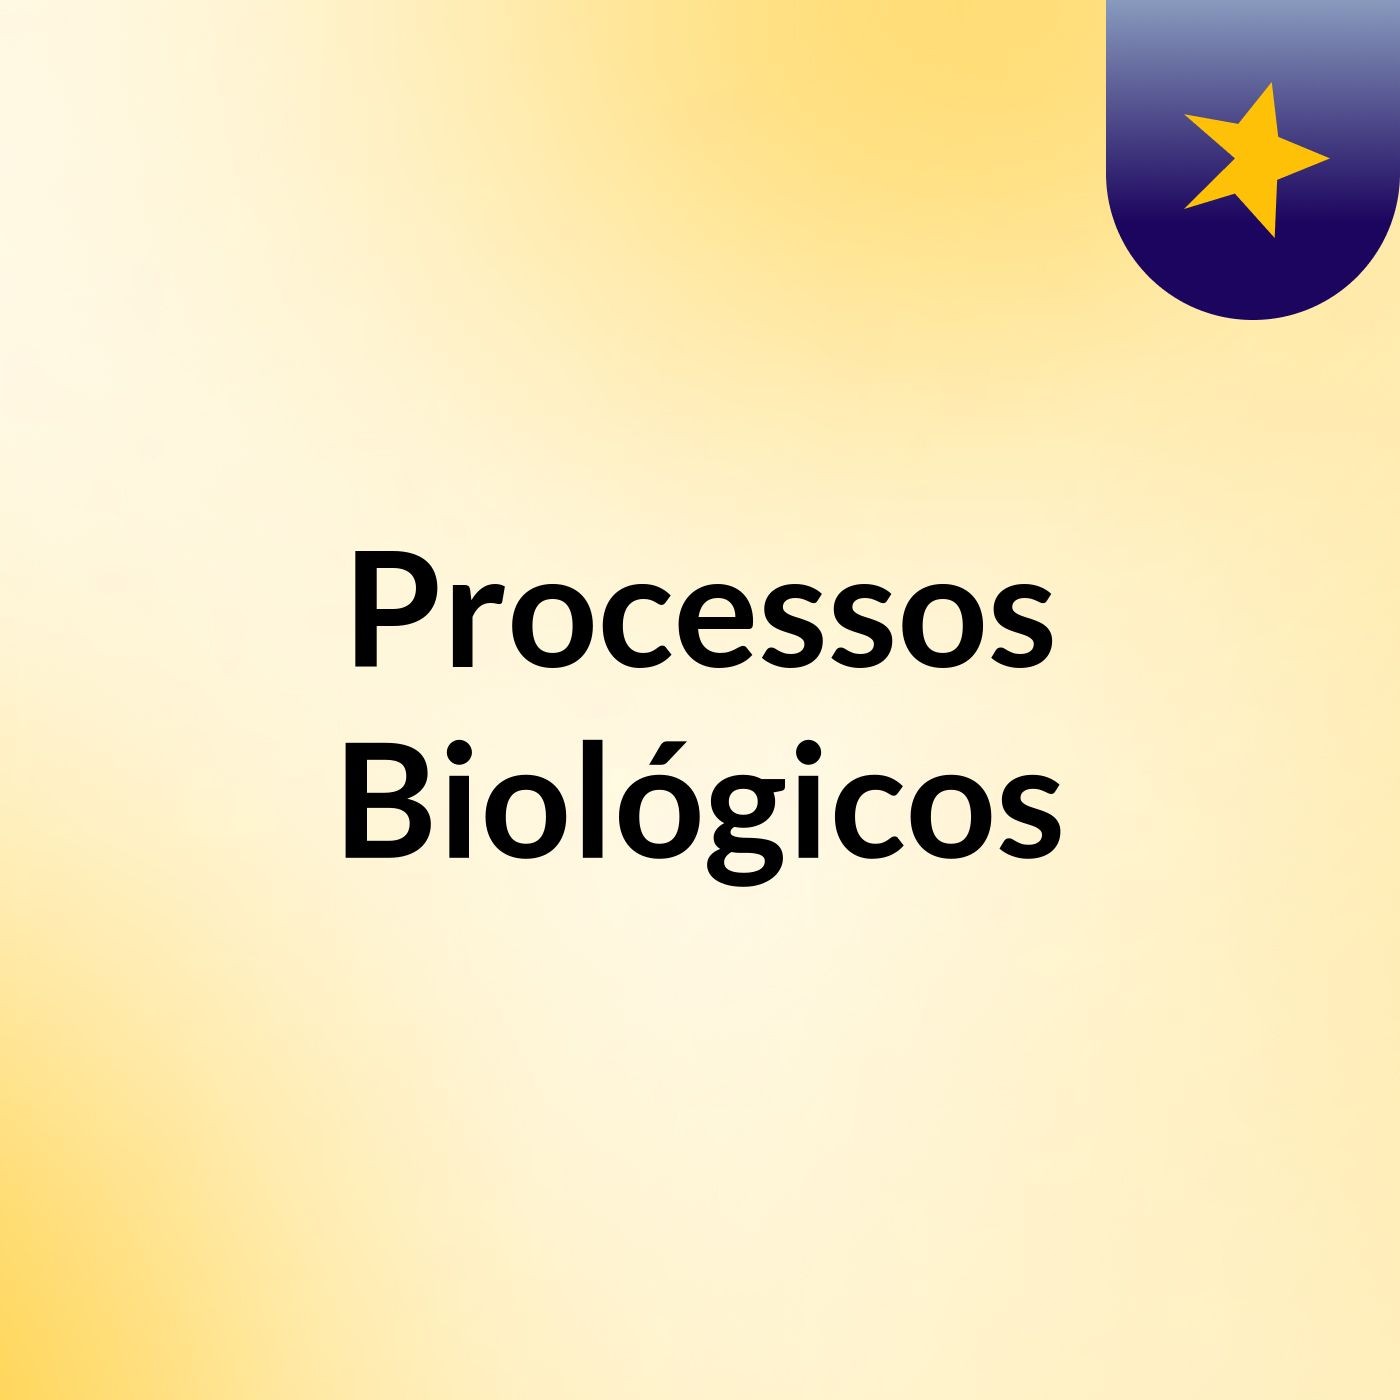 Processos Biológicos